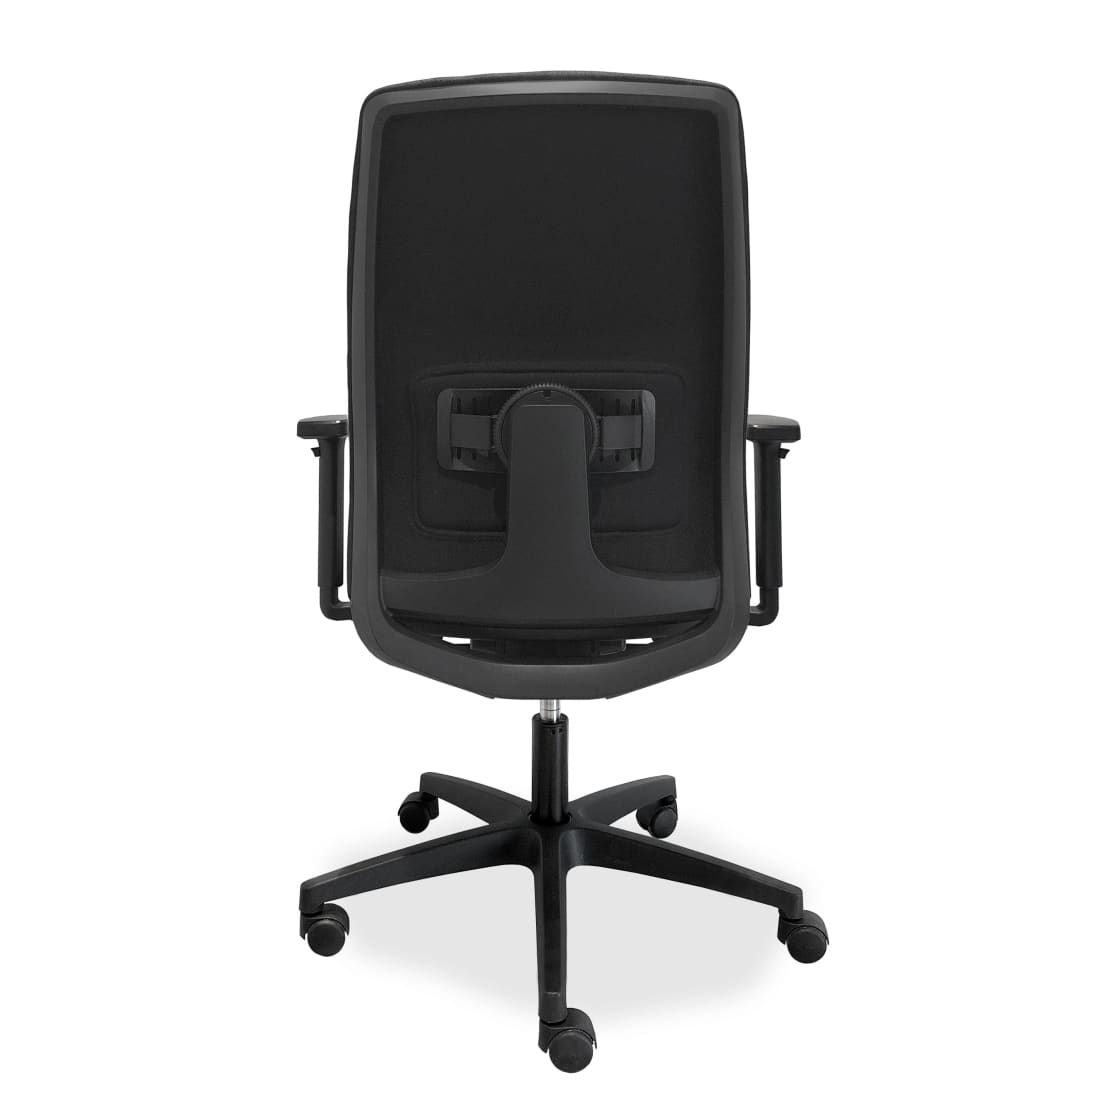 ergonomische-bureaustoel-comfort-de-singel-nen-1335-bureaustoelen-apparaat-camera-524_5364a5ae-737e-47c2-a2ca-40c7e45599ba.jpg